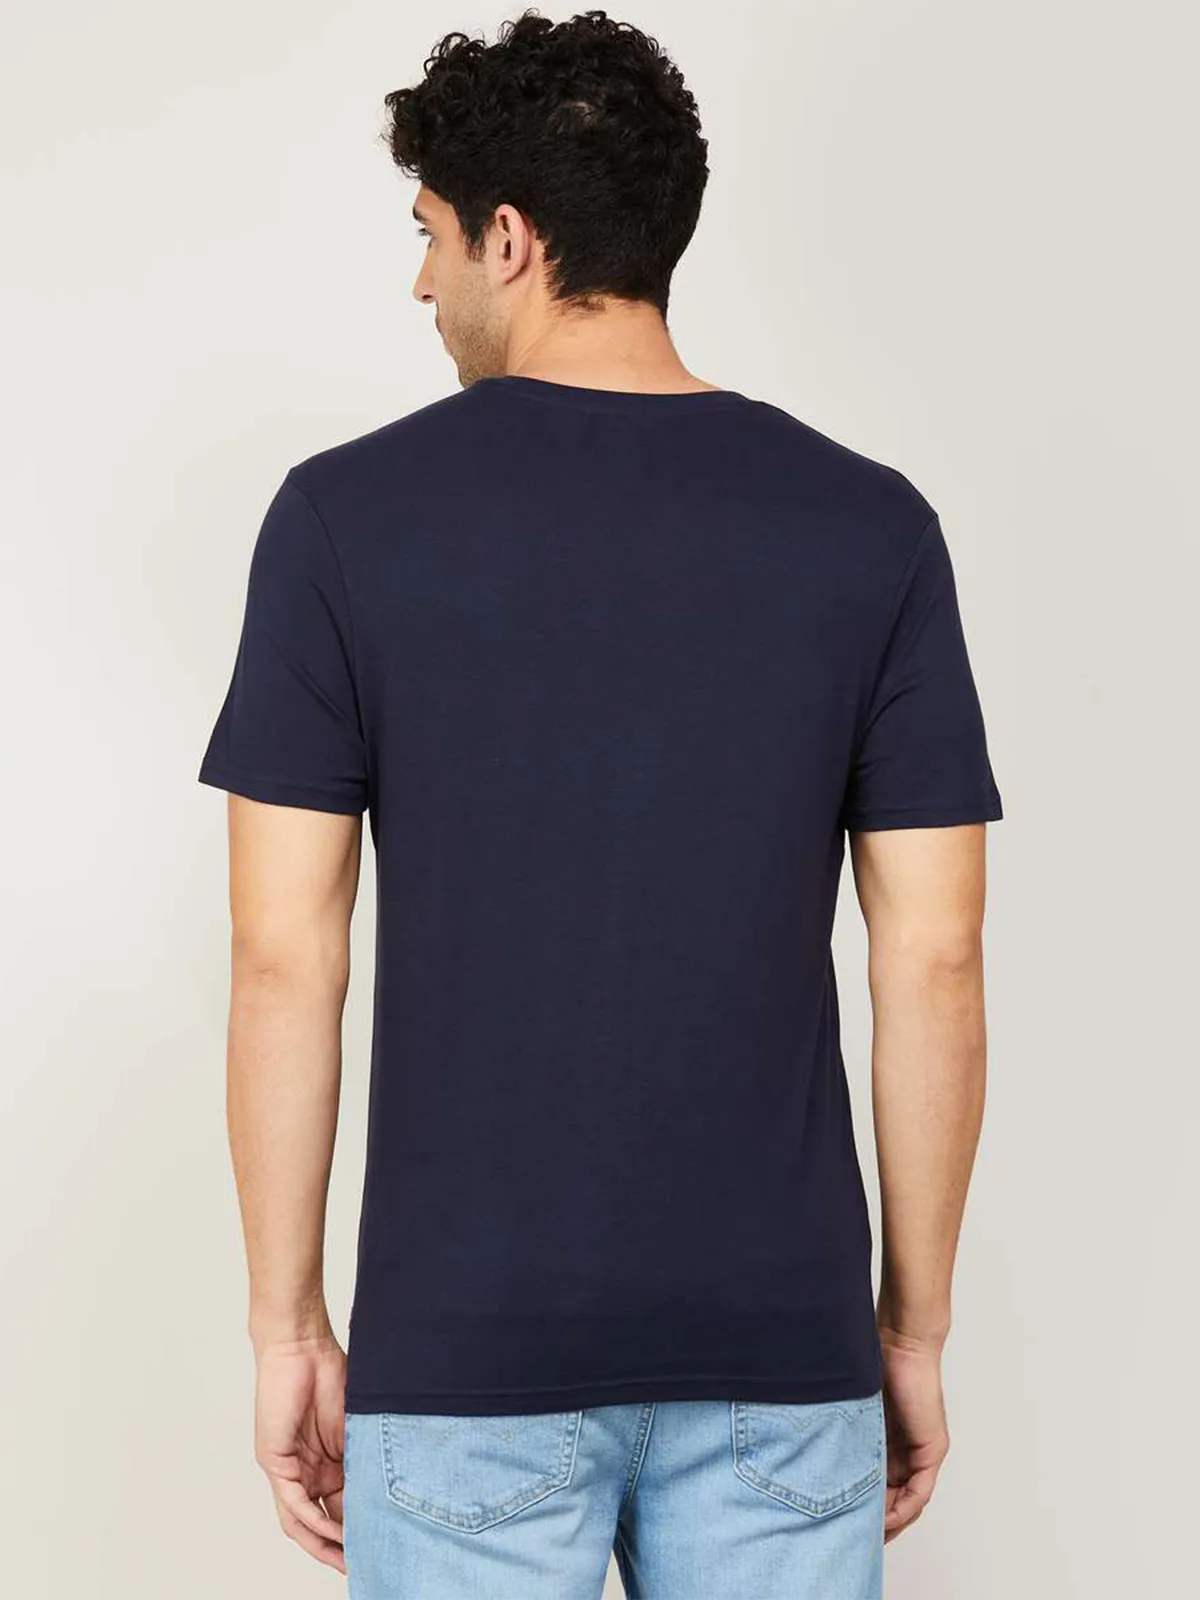 Levis navy plain slim fit cotton casual t shirt